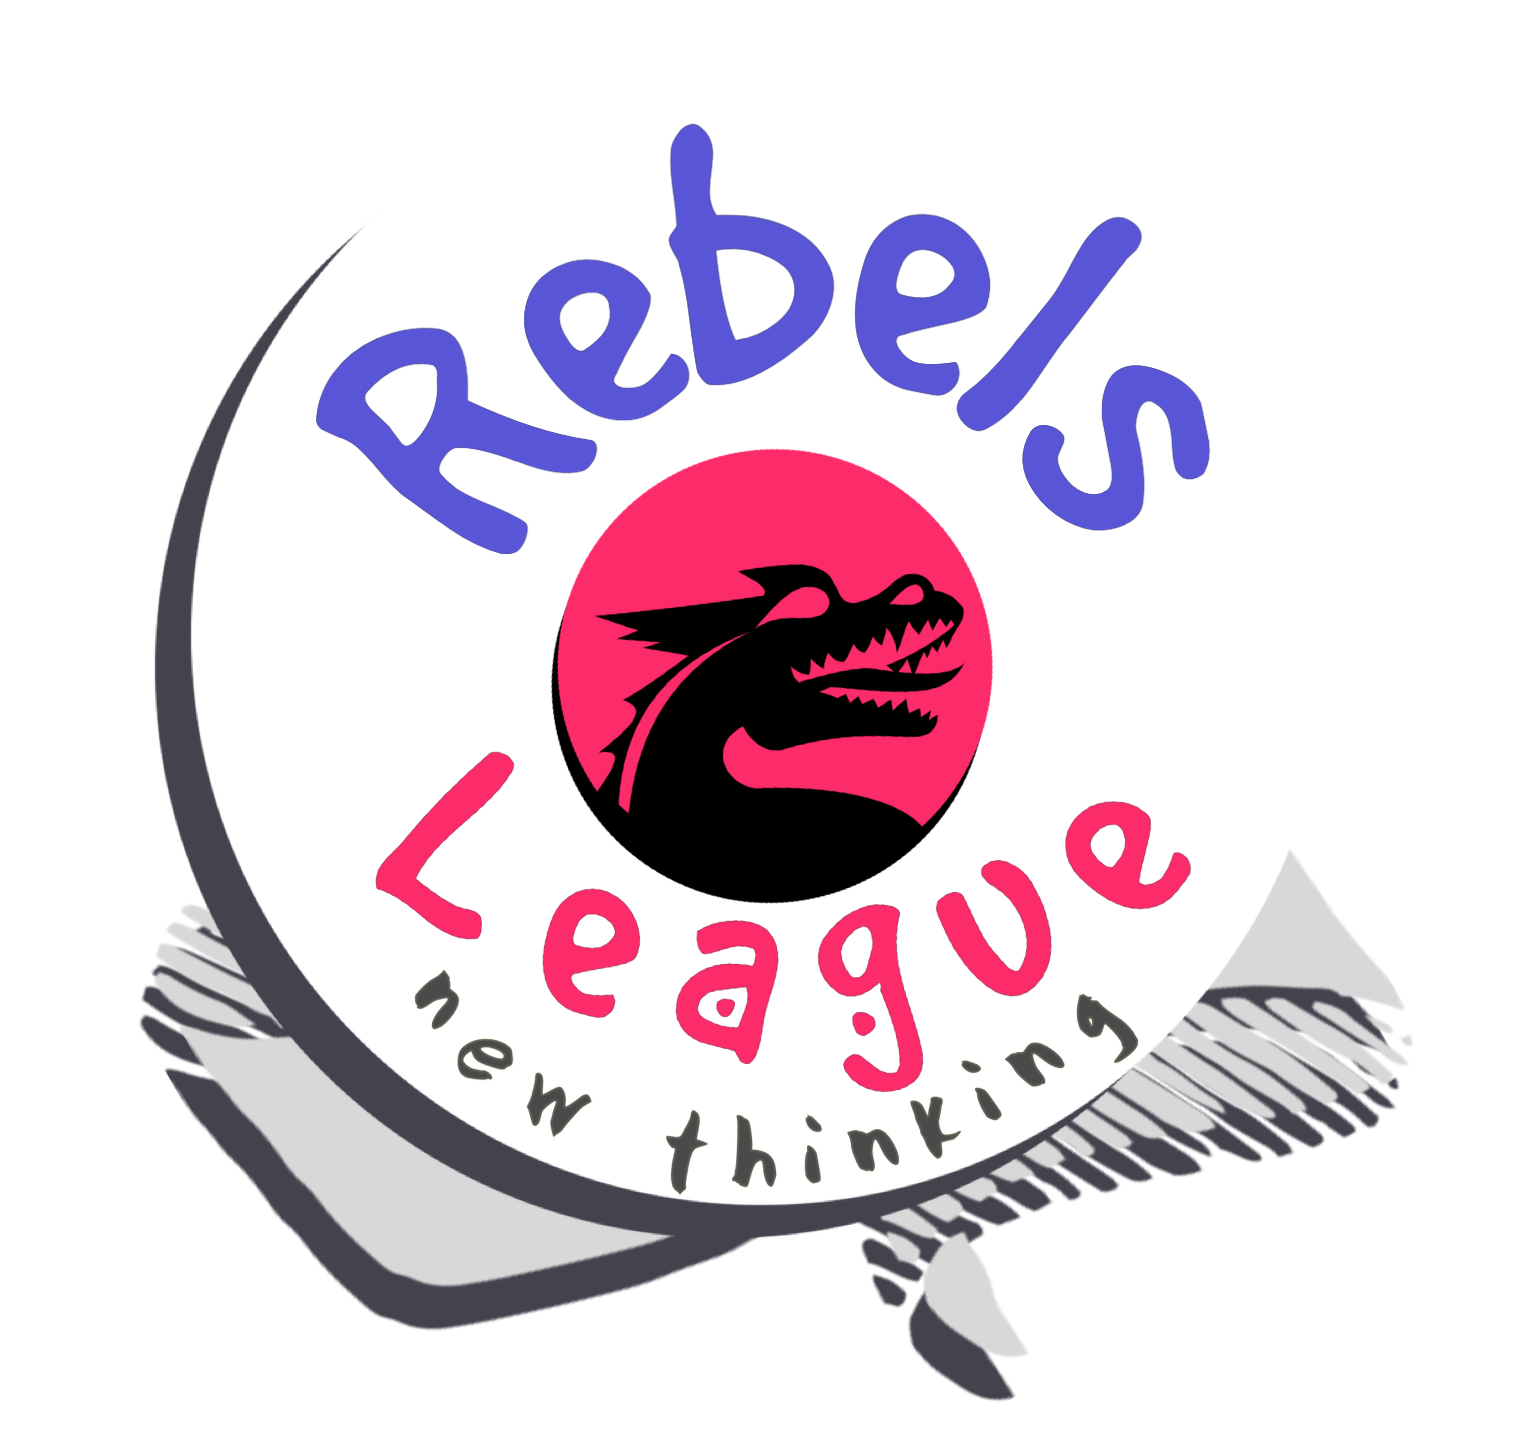 Rebels League